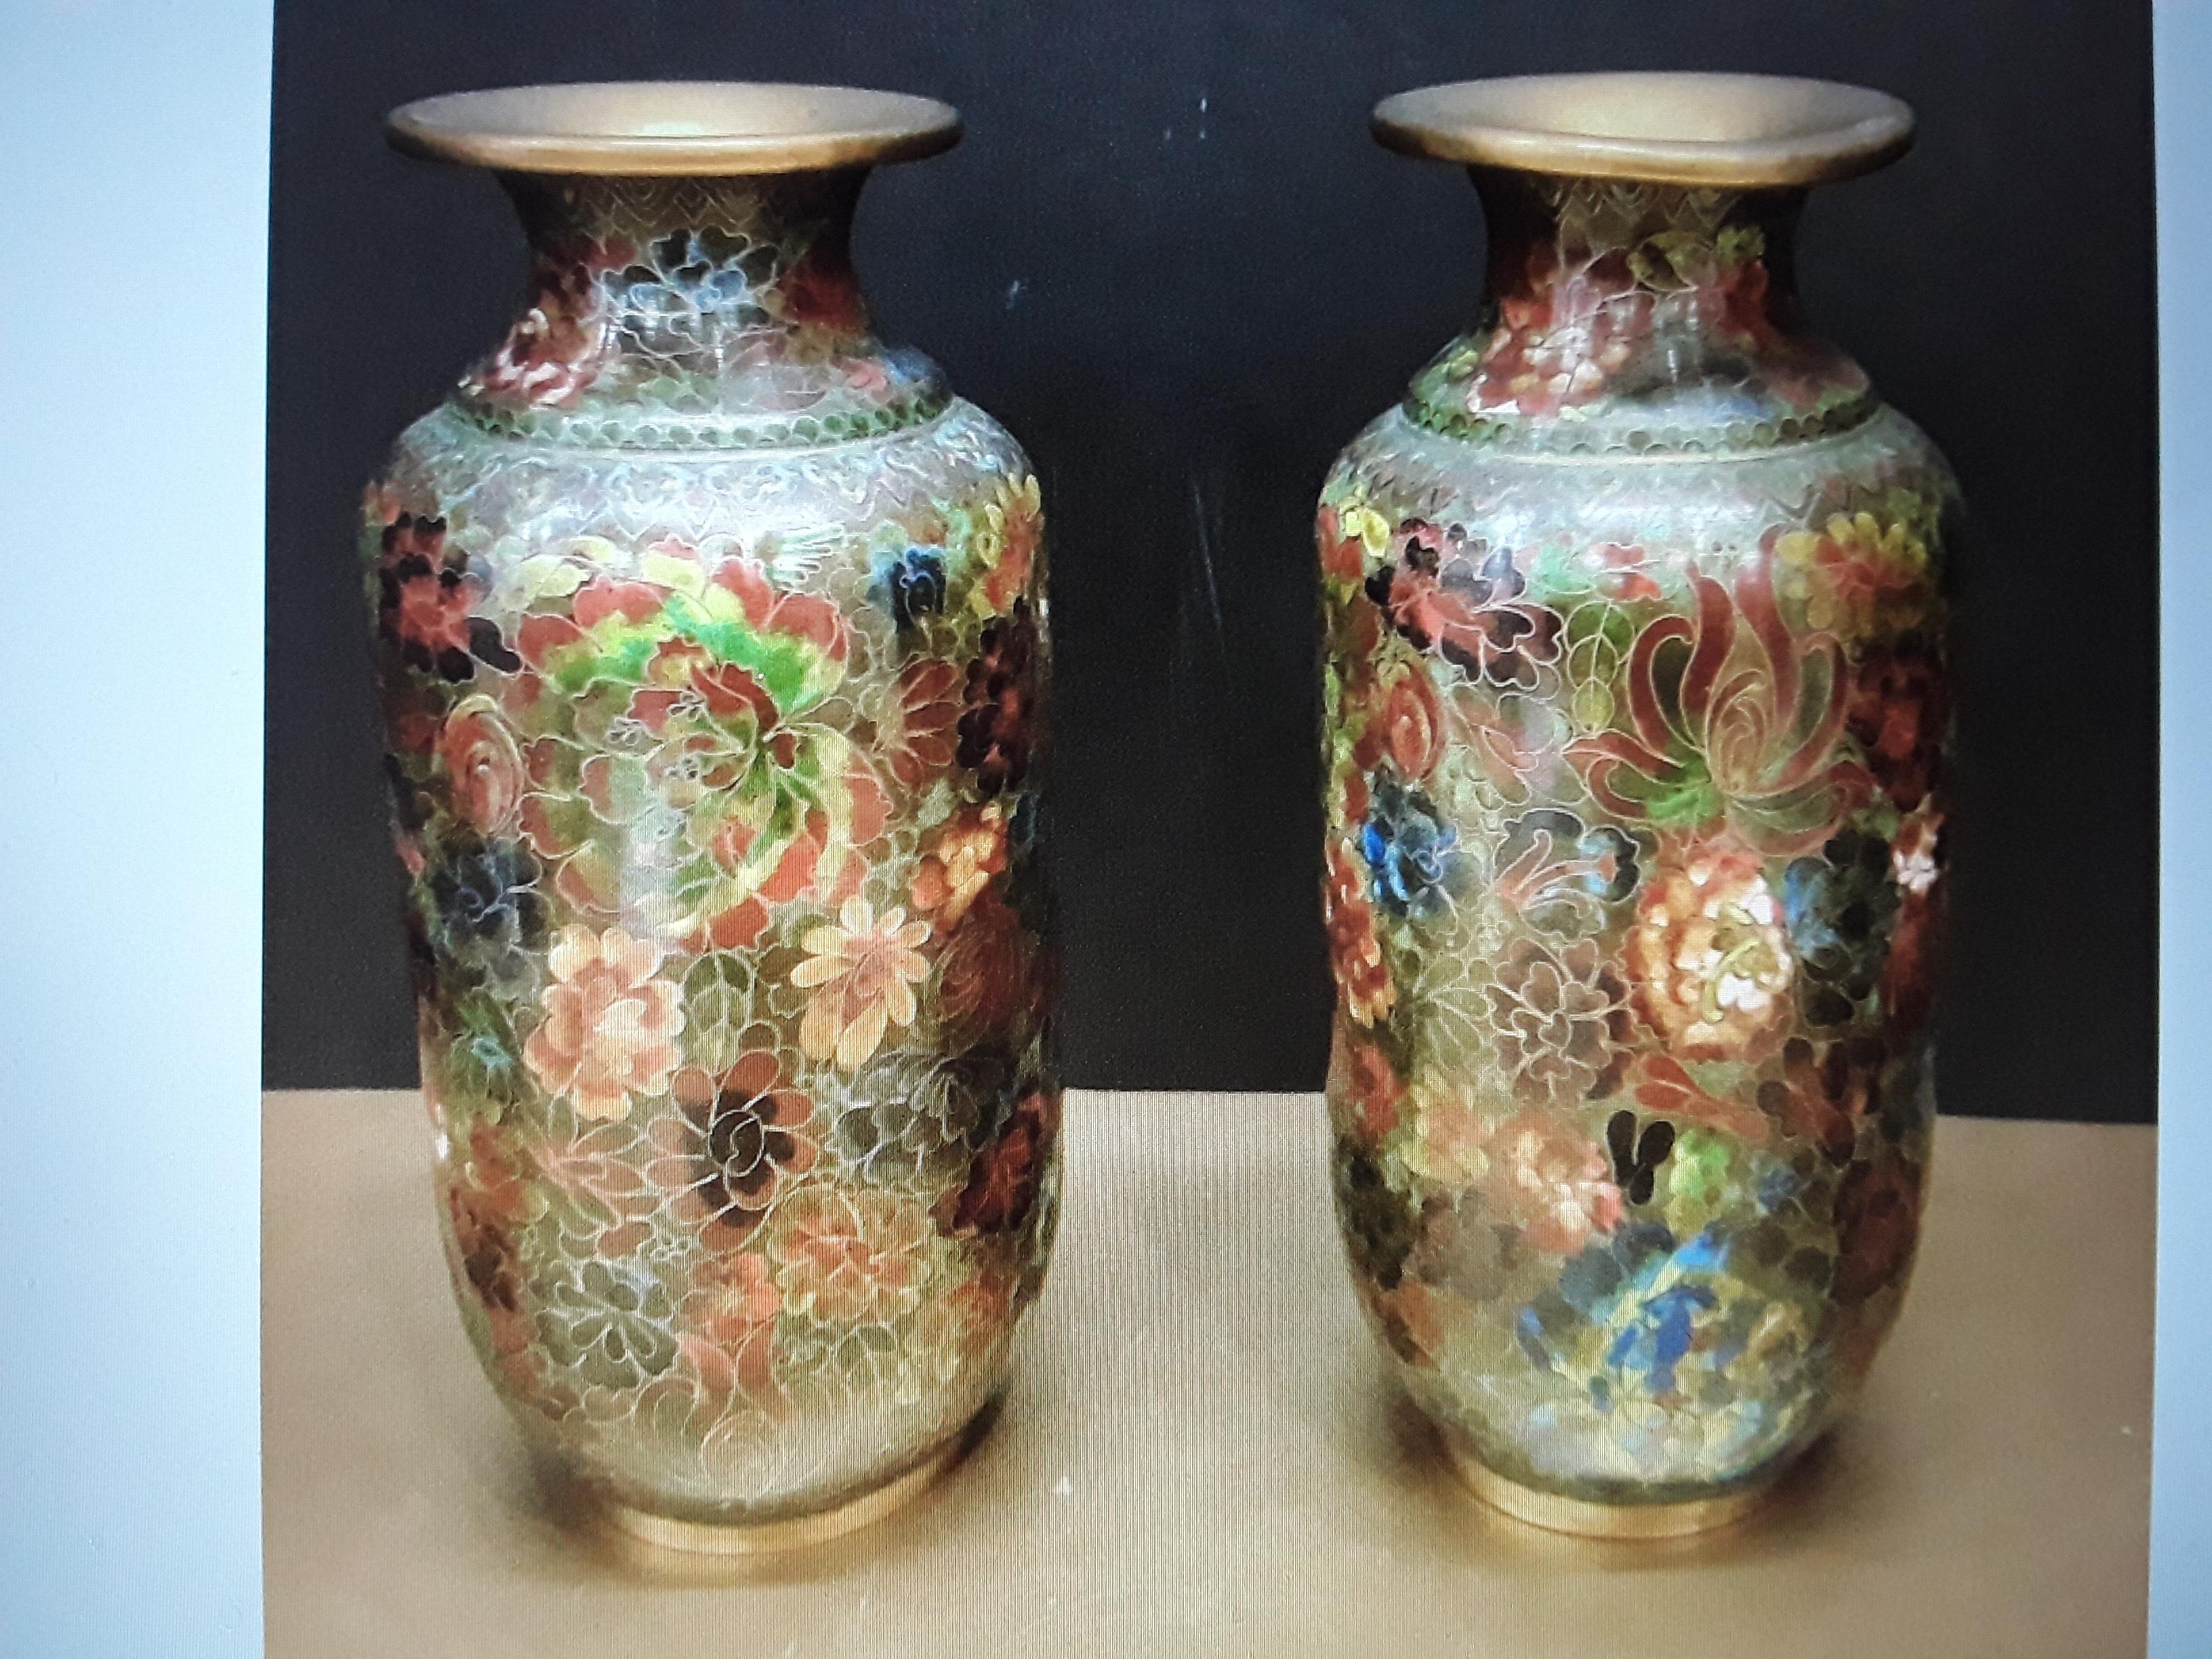 Ein atemberaubendes Paar antiker asiatischer Cloissone-Vasen. Grüne Erdtöne. Schönes Paar mit einer sehr kleinen, nicht spürbaren Delle. Das stört nicht im Geringsten.